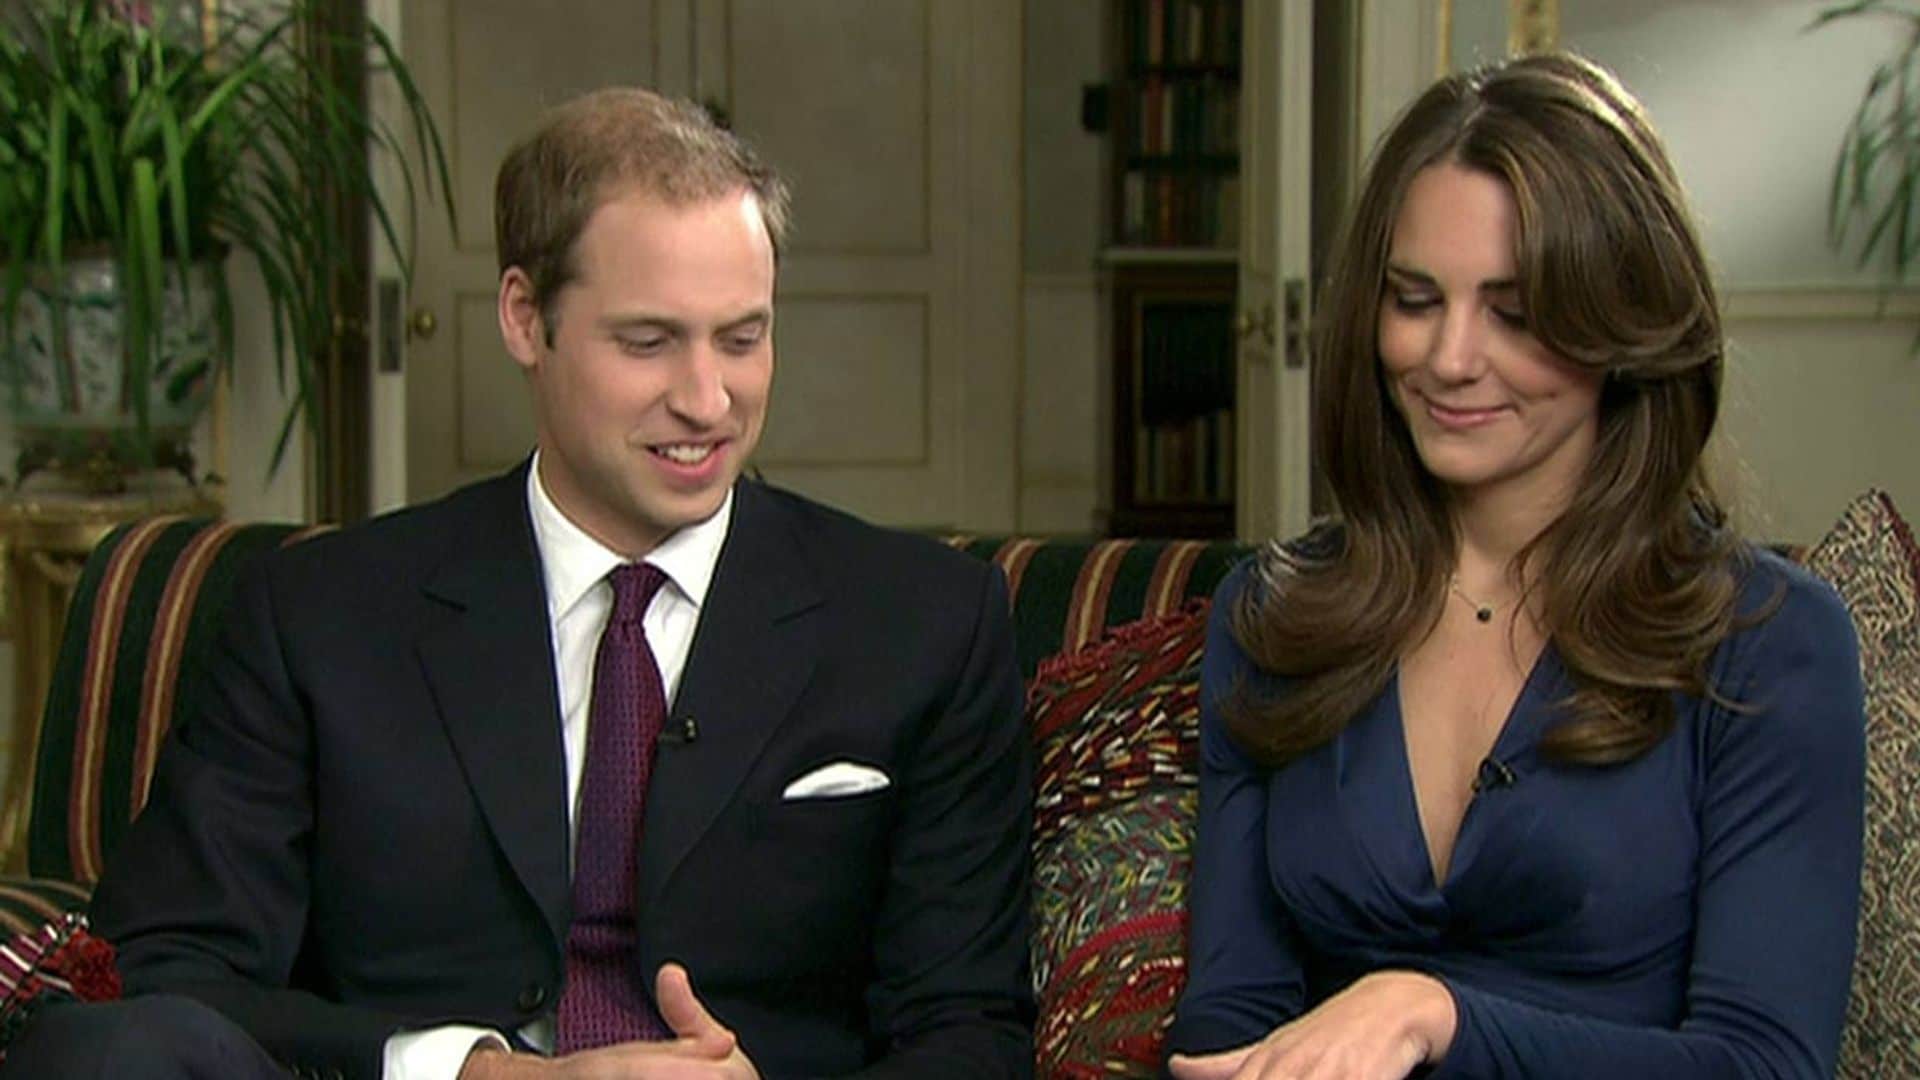 El anillo de compromiso de Diana de Gales que lleva Kate Middleton fue un regalo... ¡del príncipe Harry!